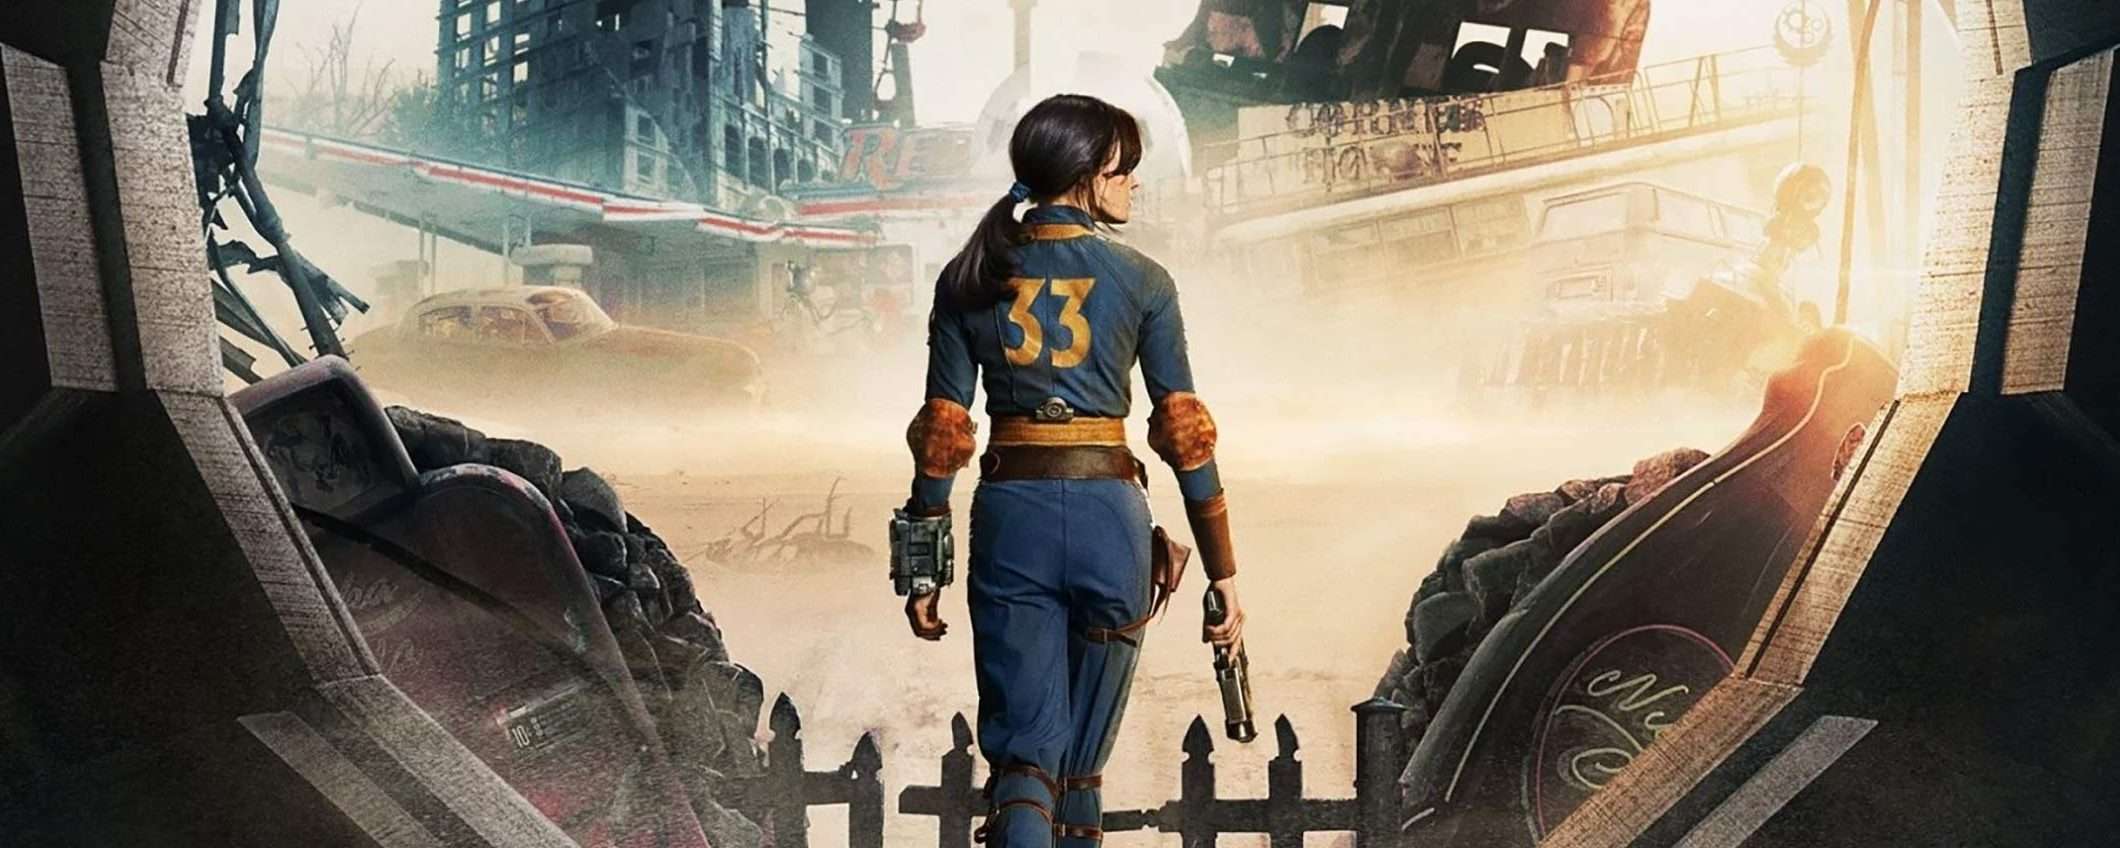 Fallout, guarda la nuova serie in streaming